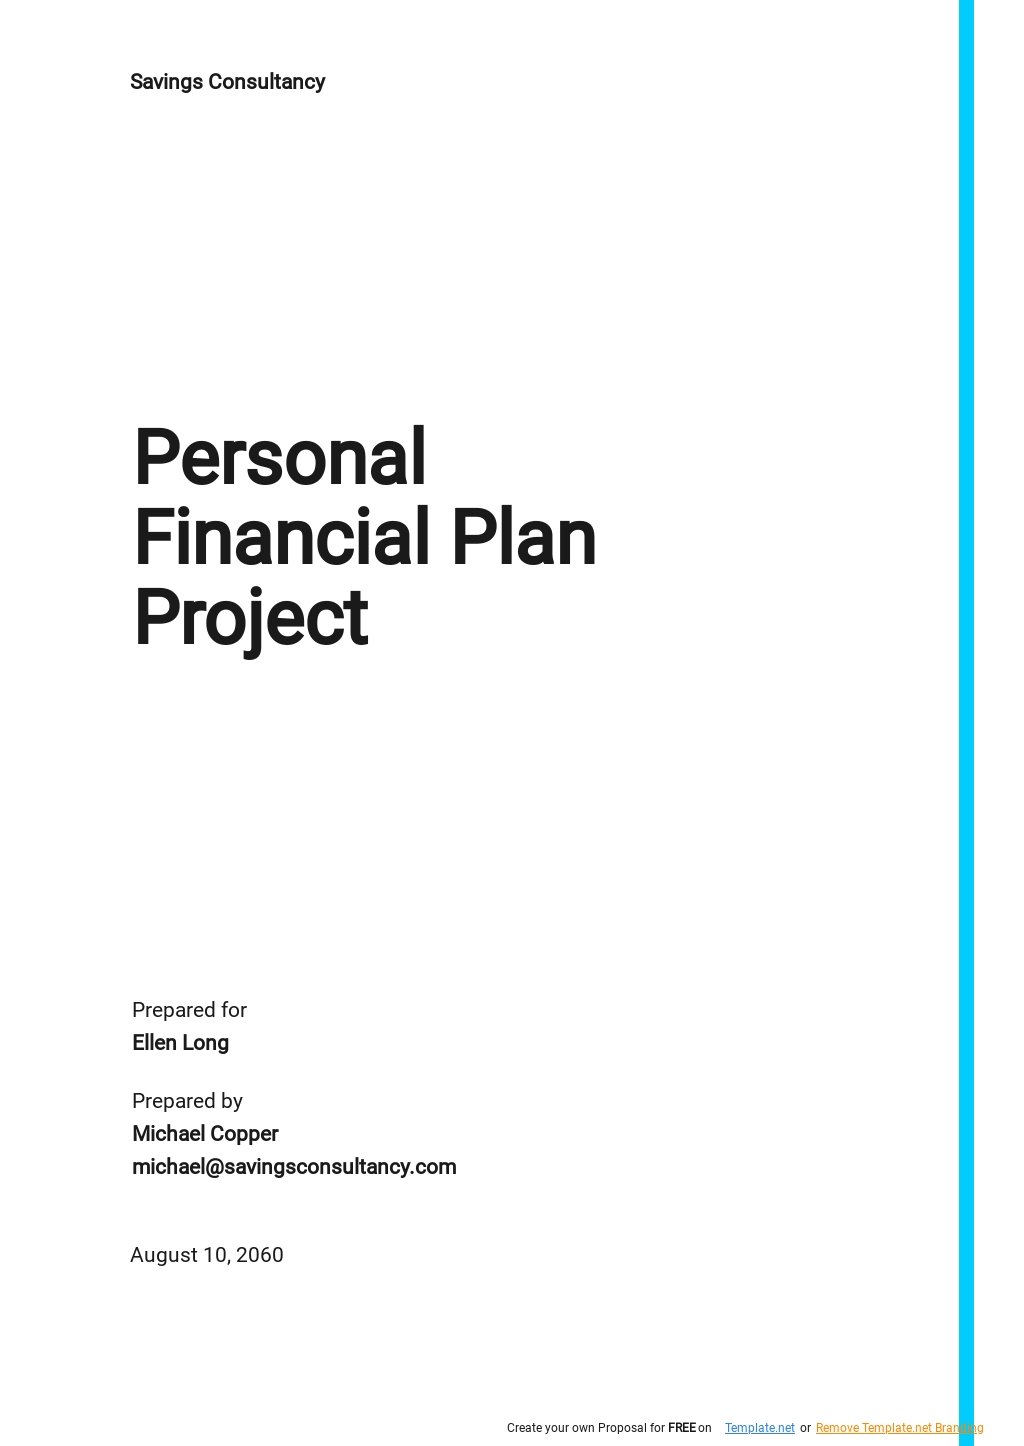 Financial Management Plan Template prntbl concejomunicipaldechinu gov co